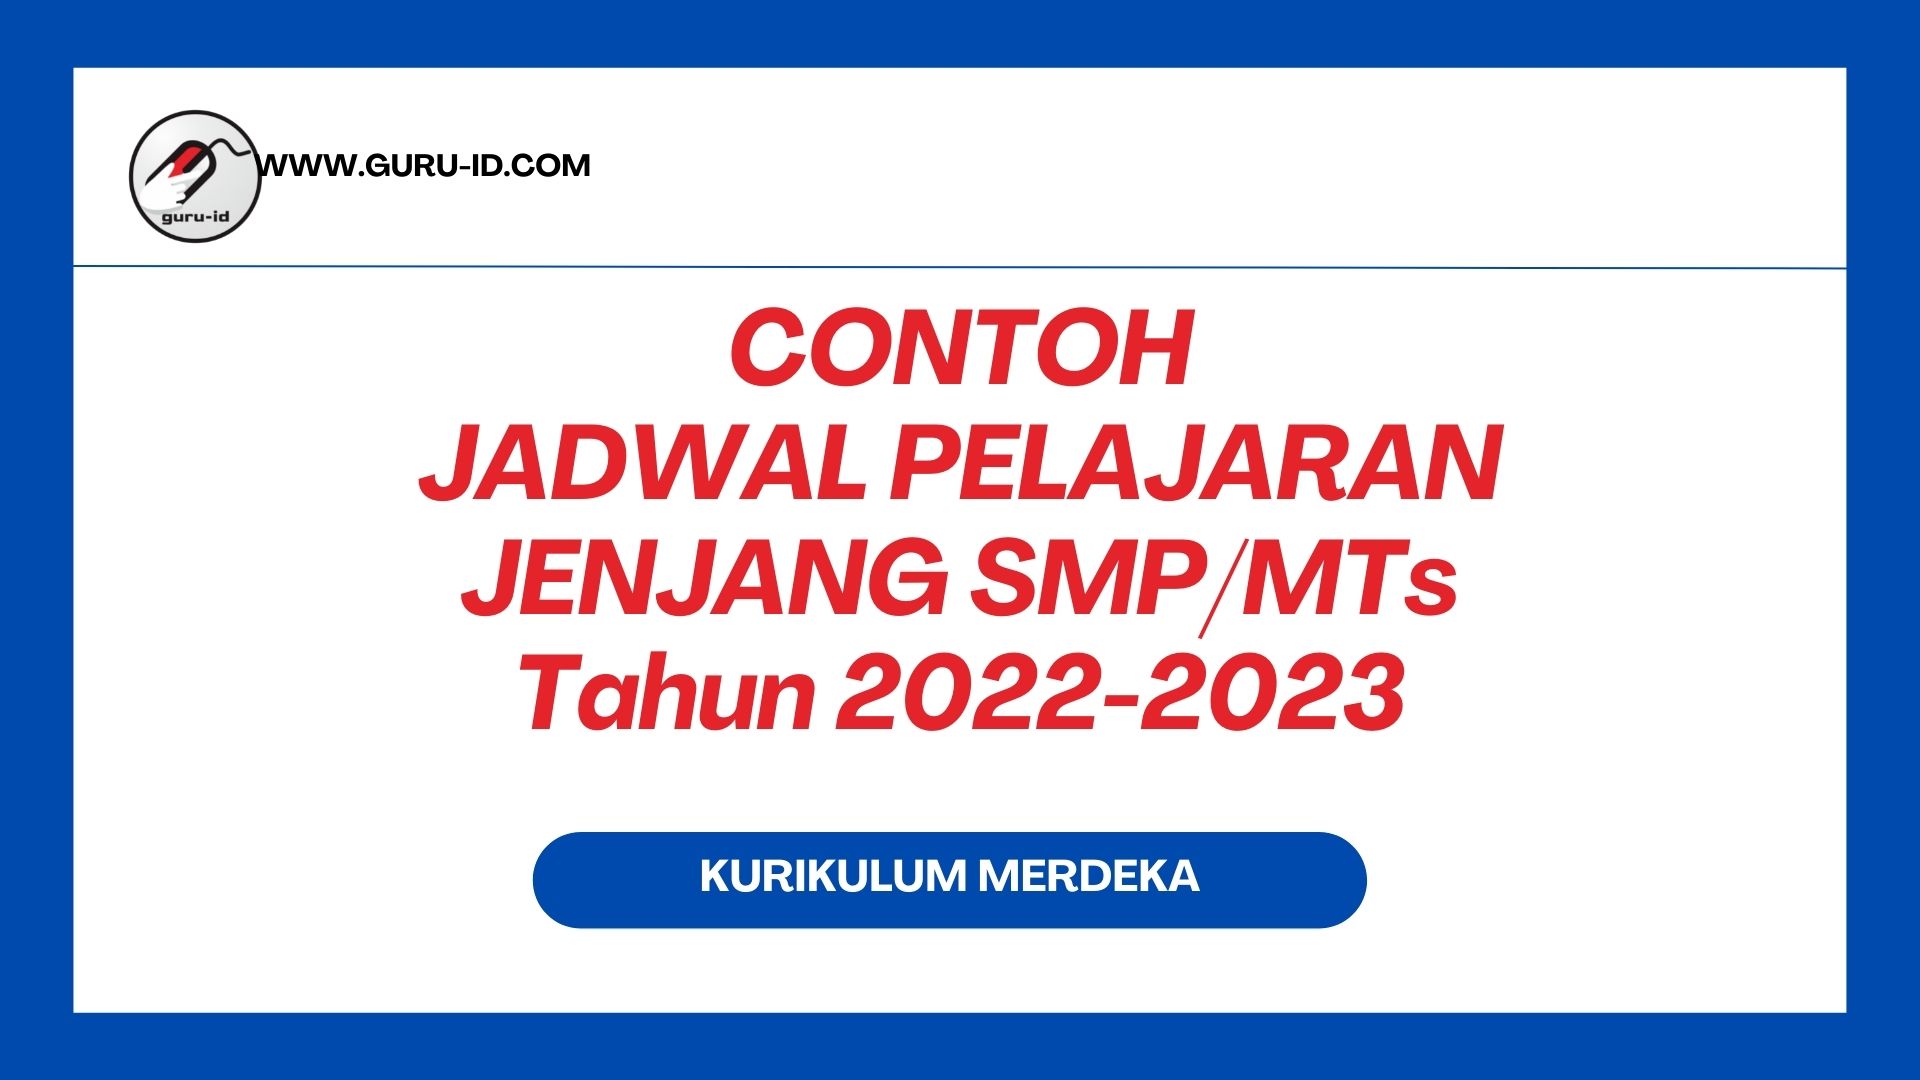 Contoh jadwal pelajaran SMP Kurikulum merdeka 2022/2023 (download